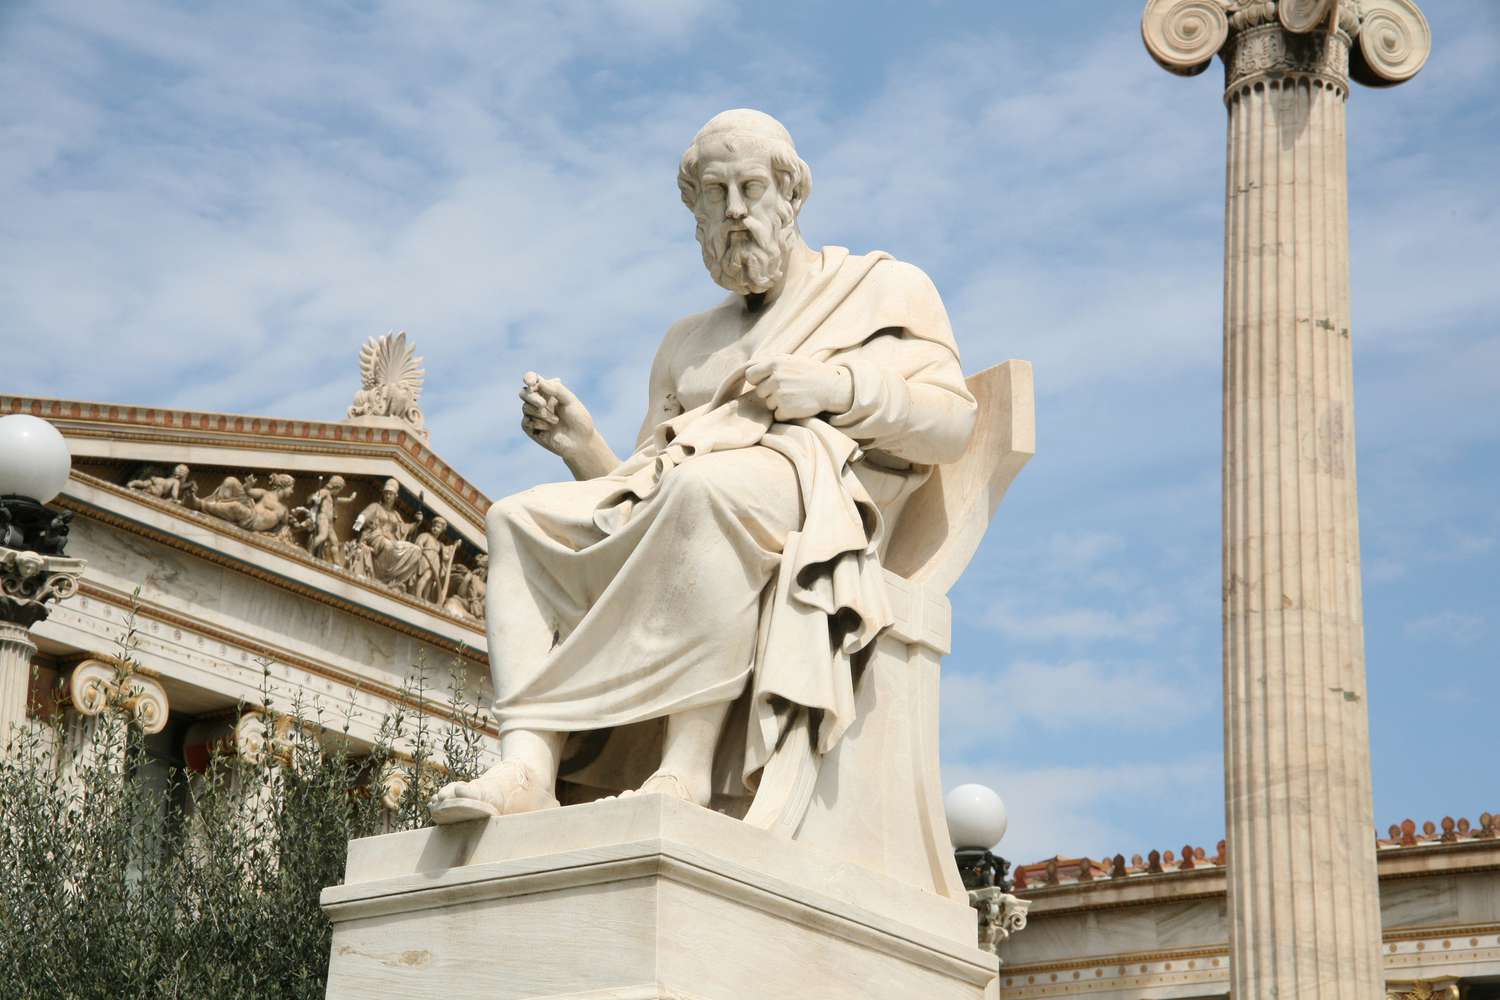 Plato Statue